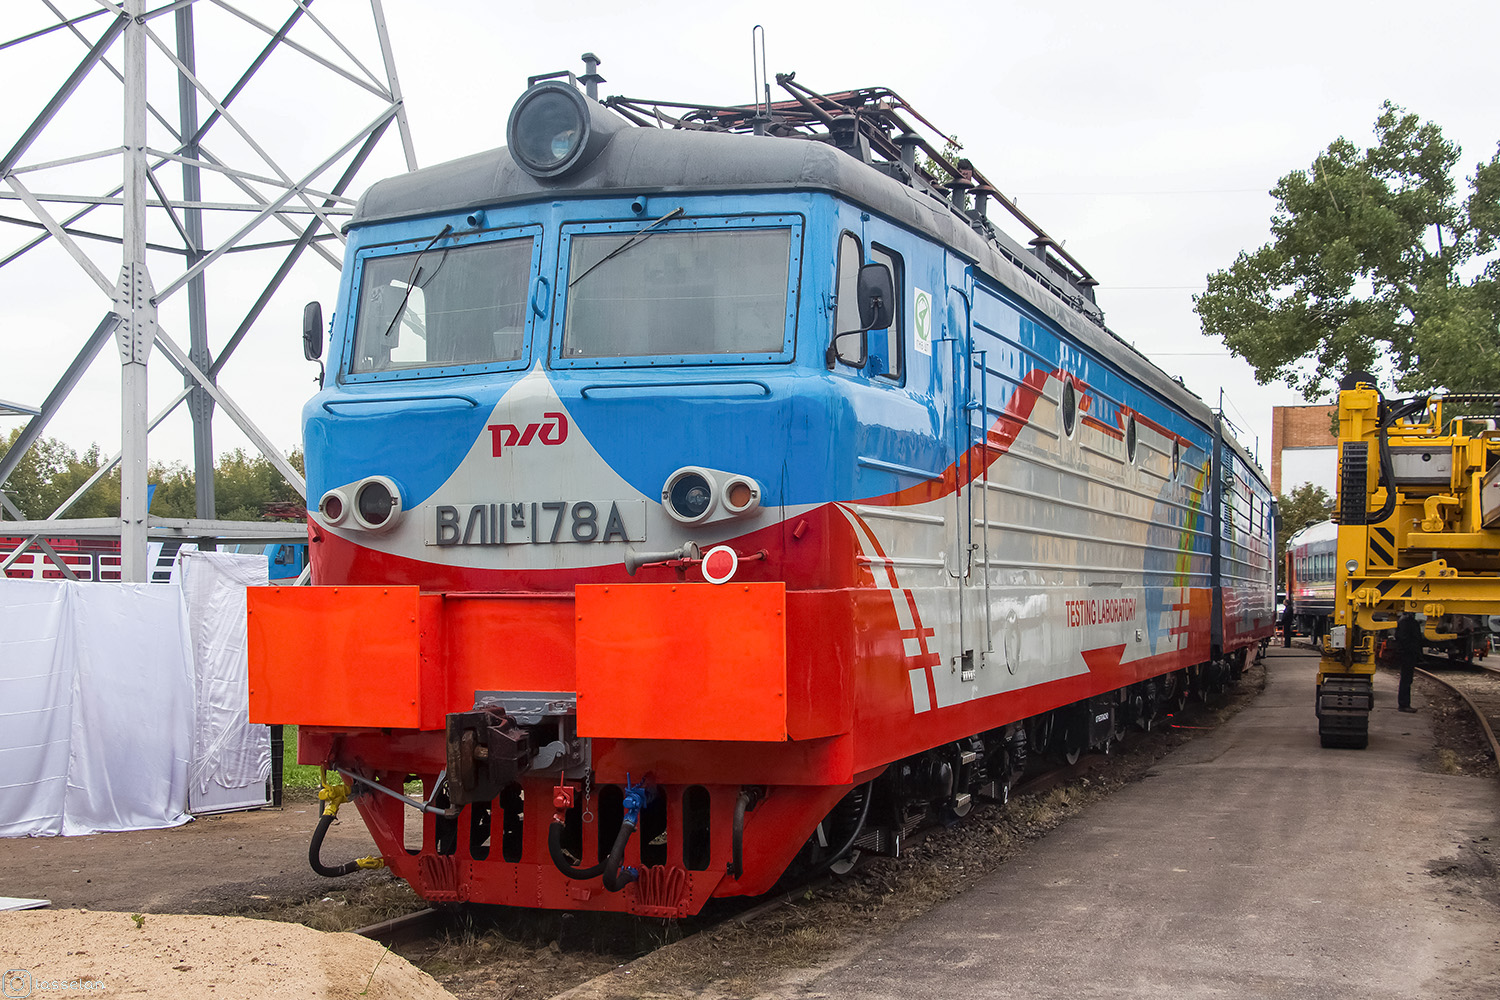 ВЛ11М-178; Московская железная дорога — IV Международный железнодорожный салон "ЭКСПО 1520" 2013